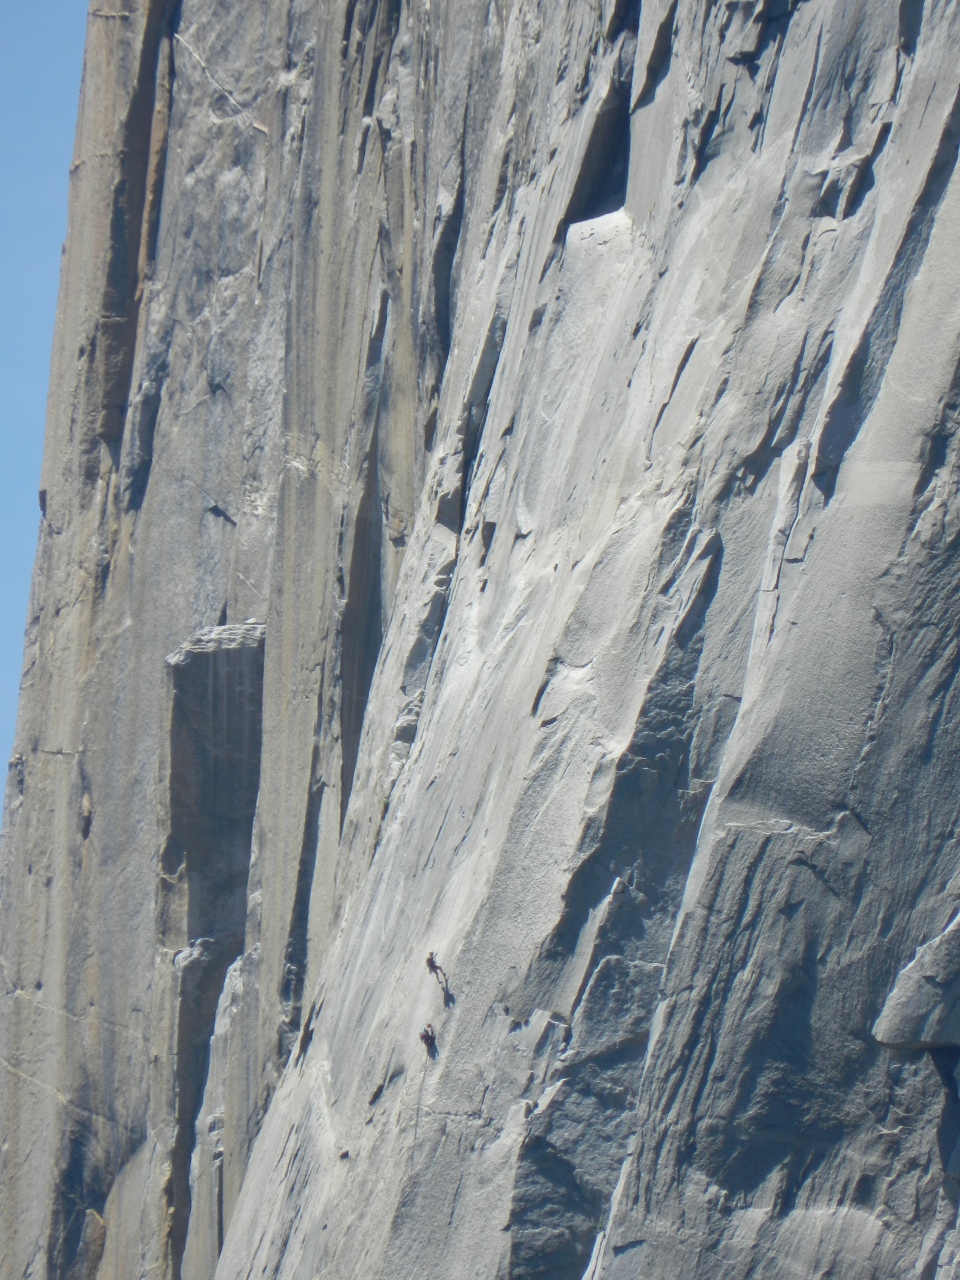 Climbers mid-way up the face of El Cap